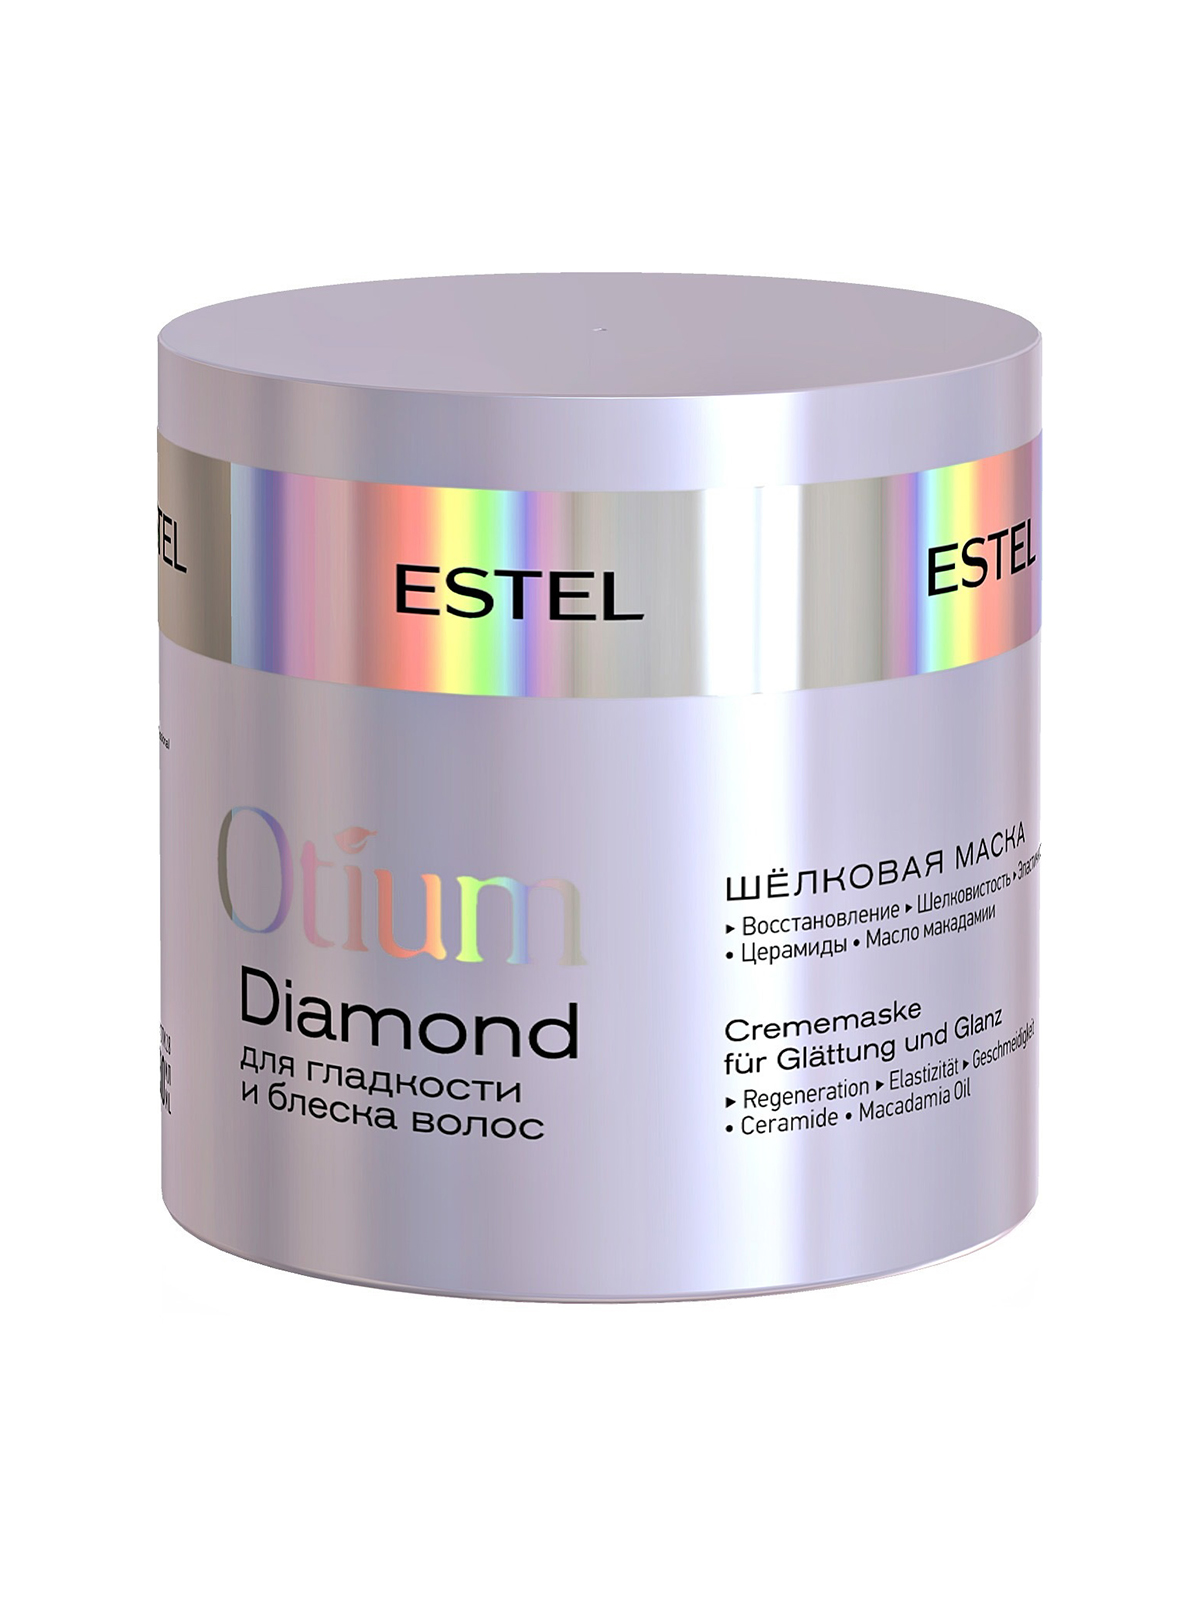 Otium маска для волос. Маска Otium Diamond. Блеск-шампунь для гладкости и блеска волос Otium Diamond (250 мл). Маска для волос Эстель. Estel Otium маска.